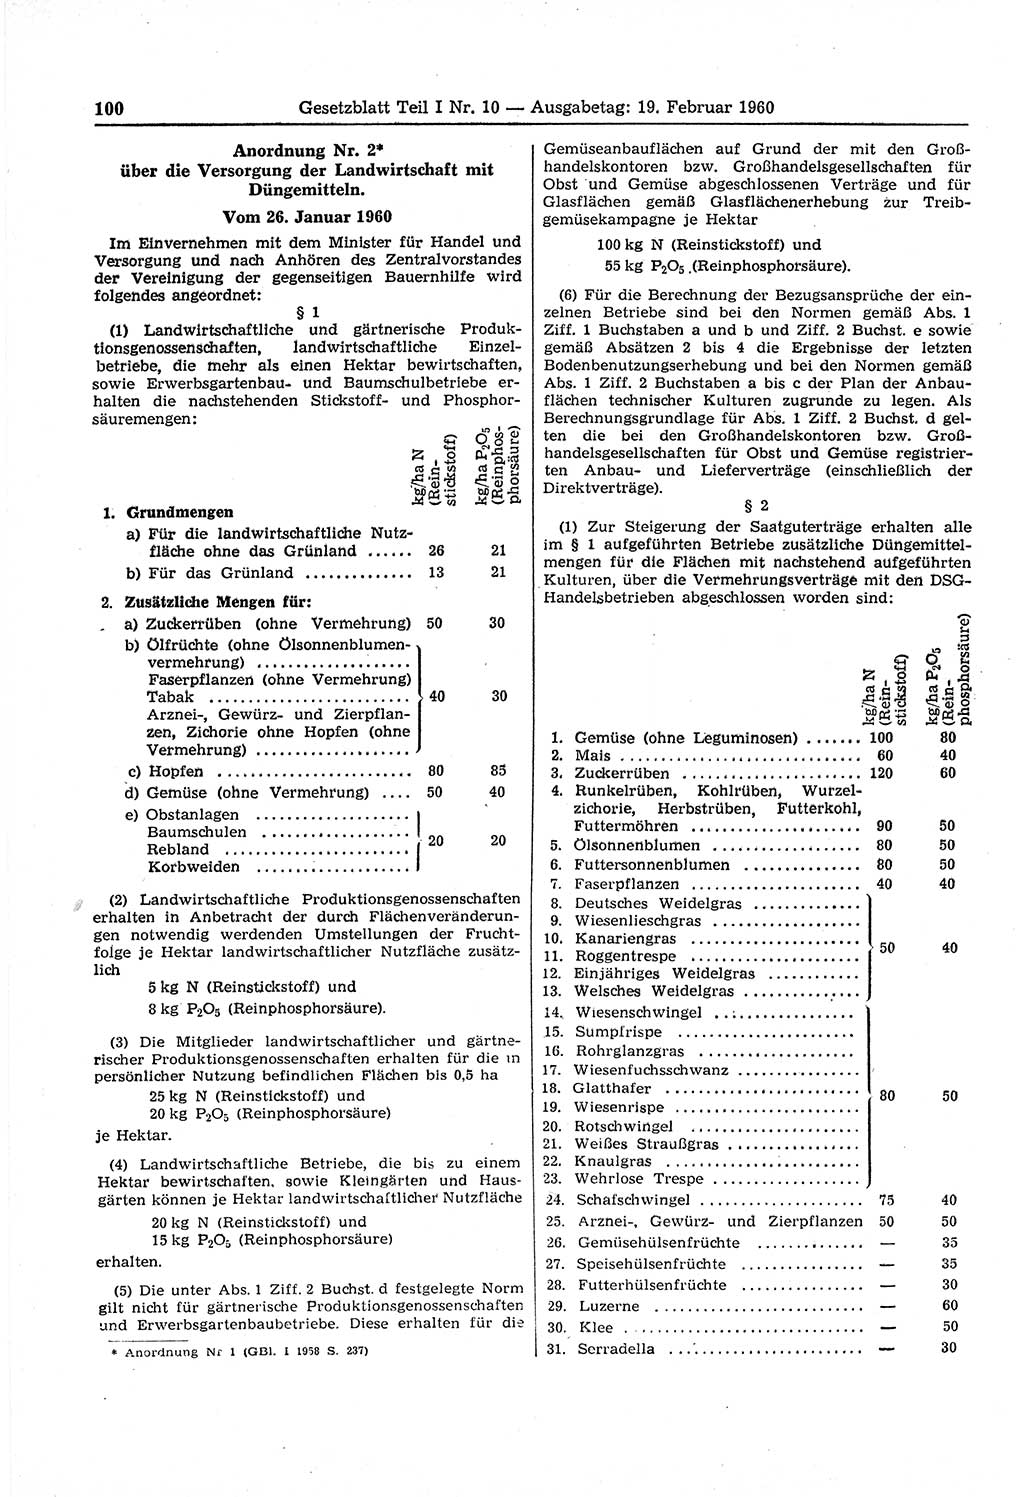 Gesetzblatt (GBl.) der Deutschen Demokratischen Republik (DDR) Teil Ⅰ 1960, Seite 100 (GBl. DDR Ⅰ 1960, S. 100)